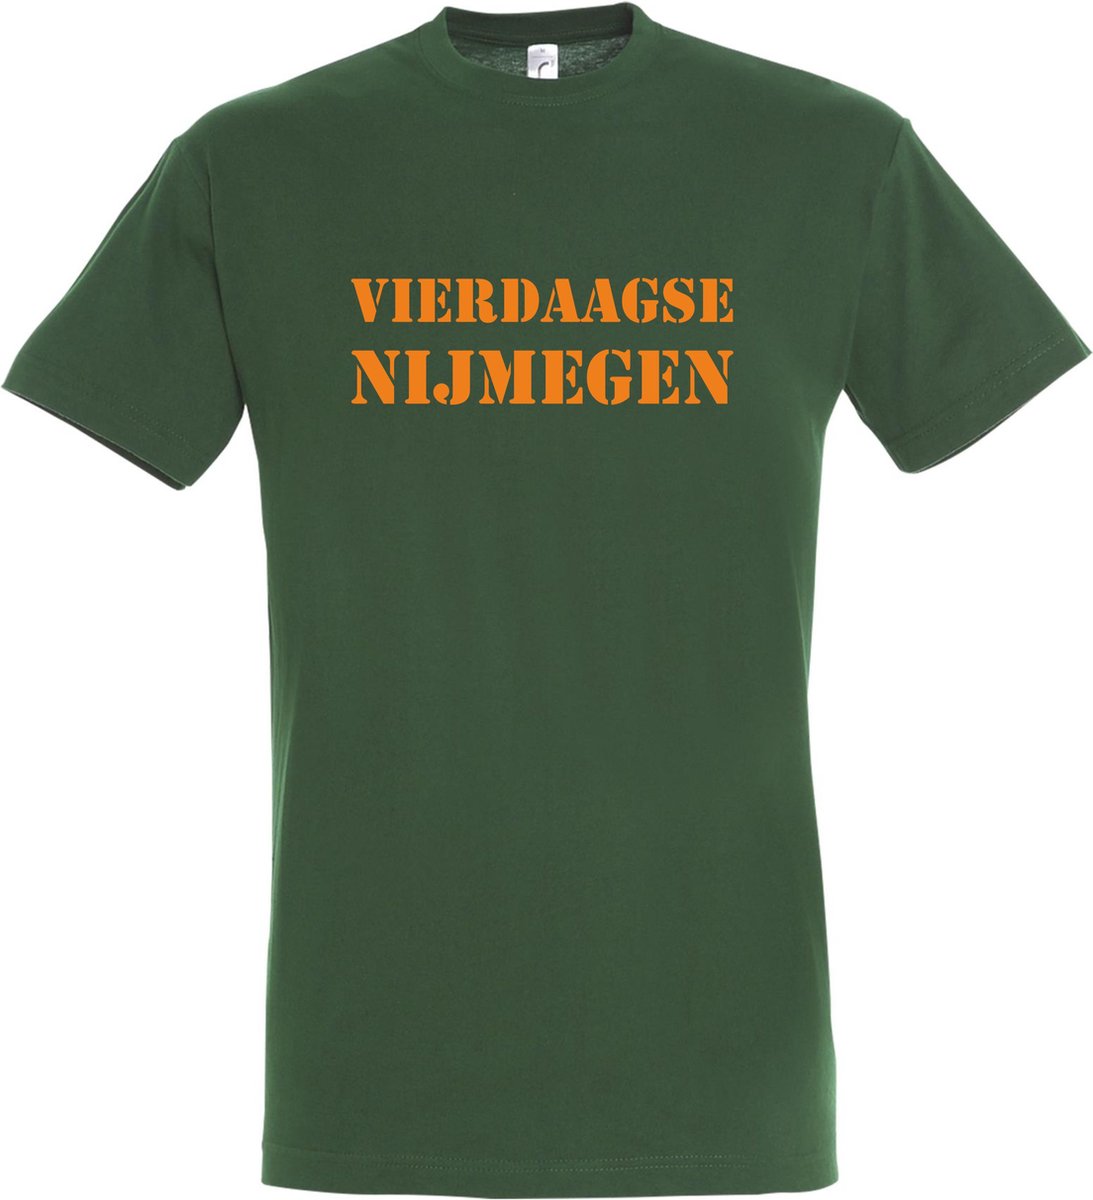 T-shirt Vierdaagse Nijmegen |Wandelvierdaagse | Vierdaagse Nijmegen | Roze woensdag | Groen | maat XS